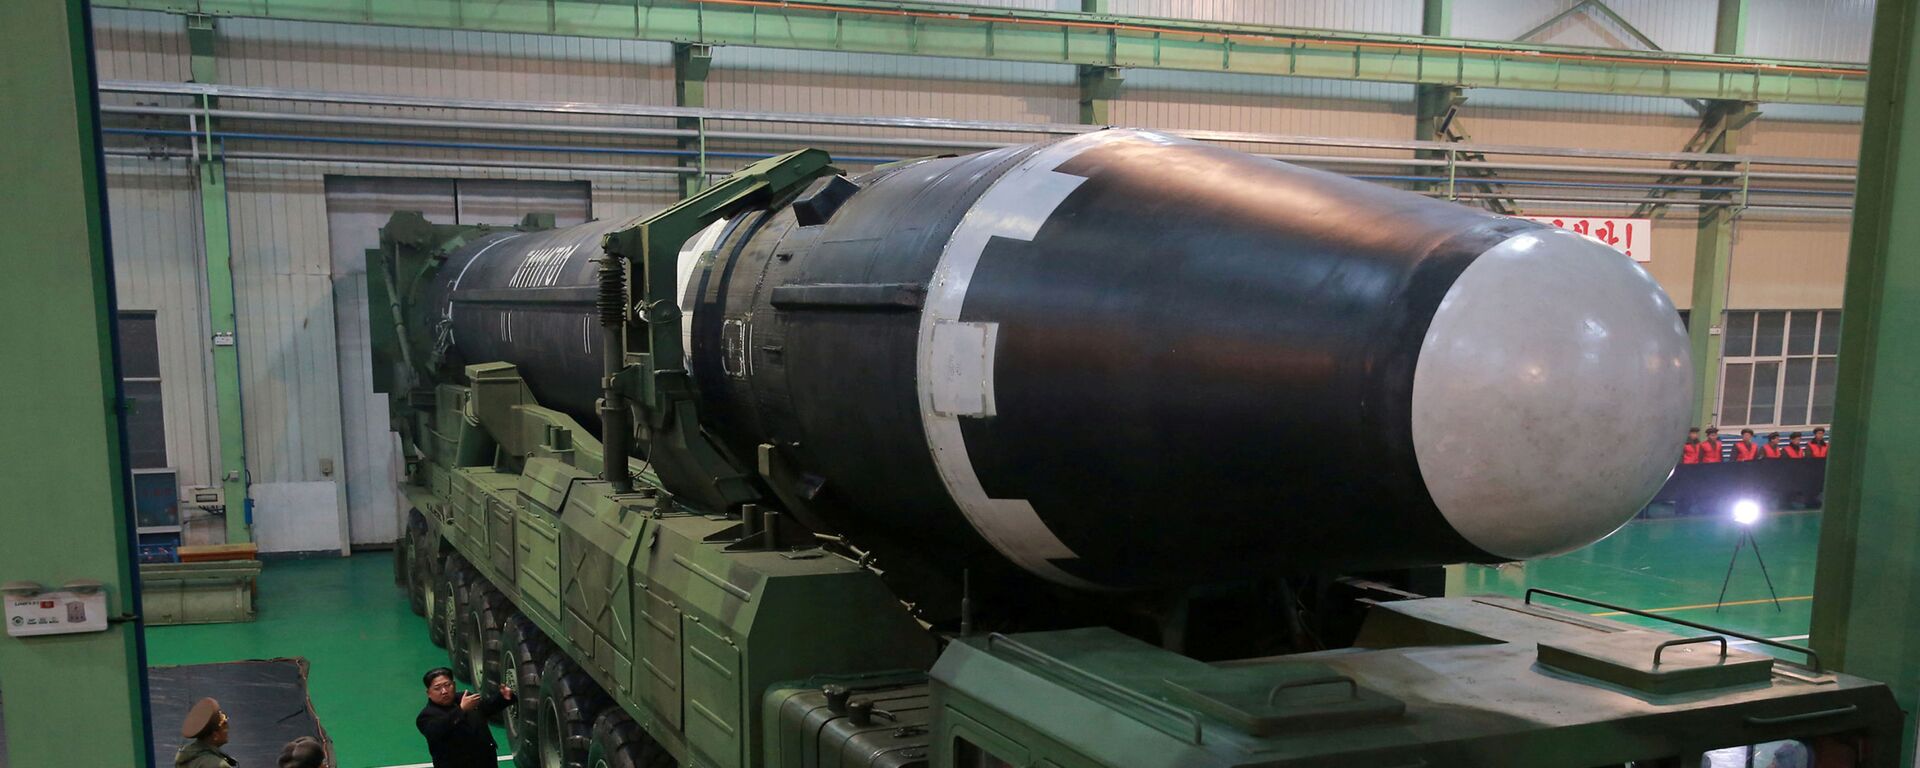 اطلاق صاروخ باليستي - بيونغ يانغ - كوريا الشمالية 29 نوفمبر/ تشرين الثاني 2017 - سبوتنيك عربي, 1920, 05.01.2022